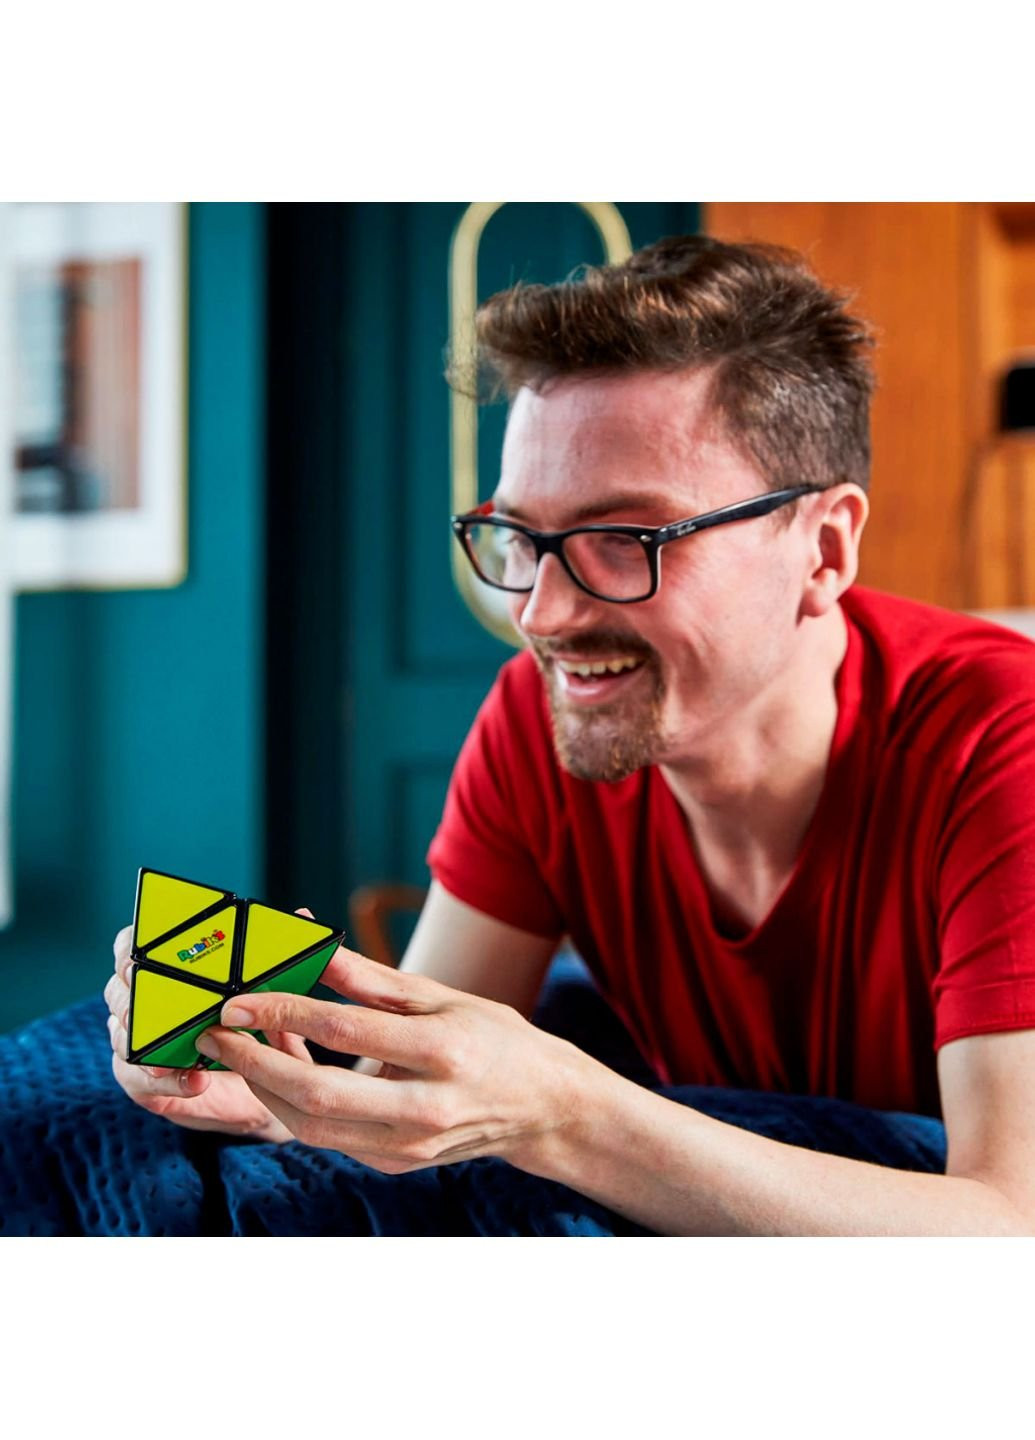 Настільна гра Пірамідка (6062662) Rubik's (252158698)